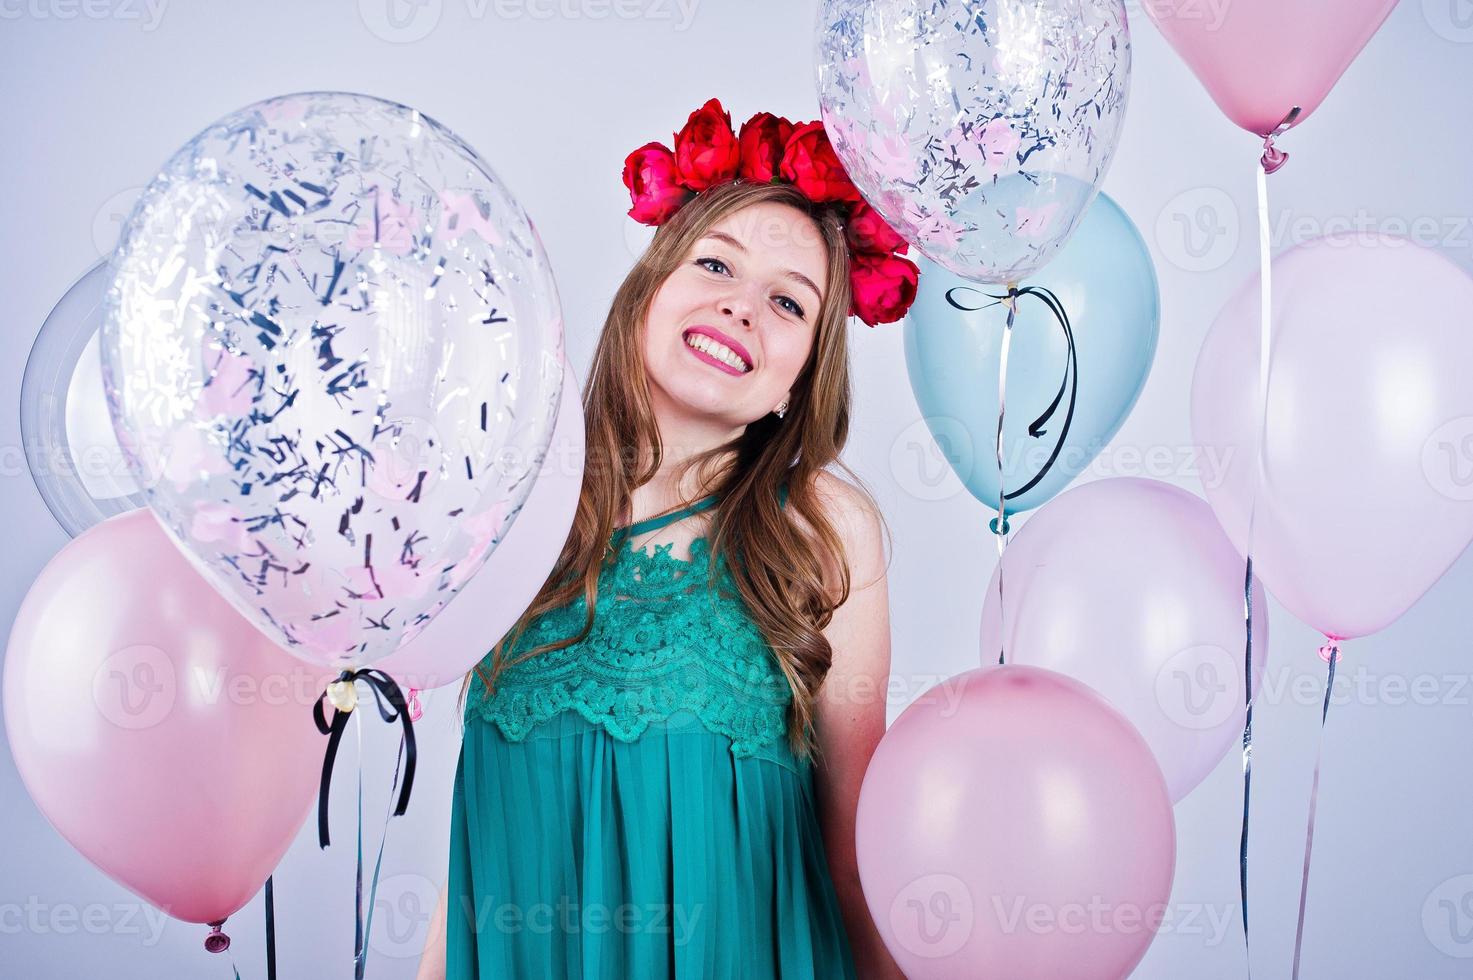 garota feliz no vestido verde turquesa e grinalda com balões coloridos isolados no branco. comemorando o tema do aniversário. foto